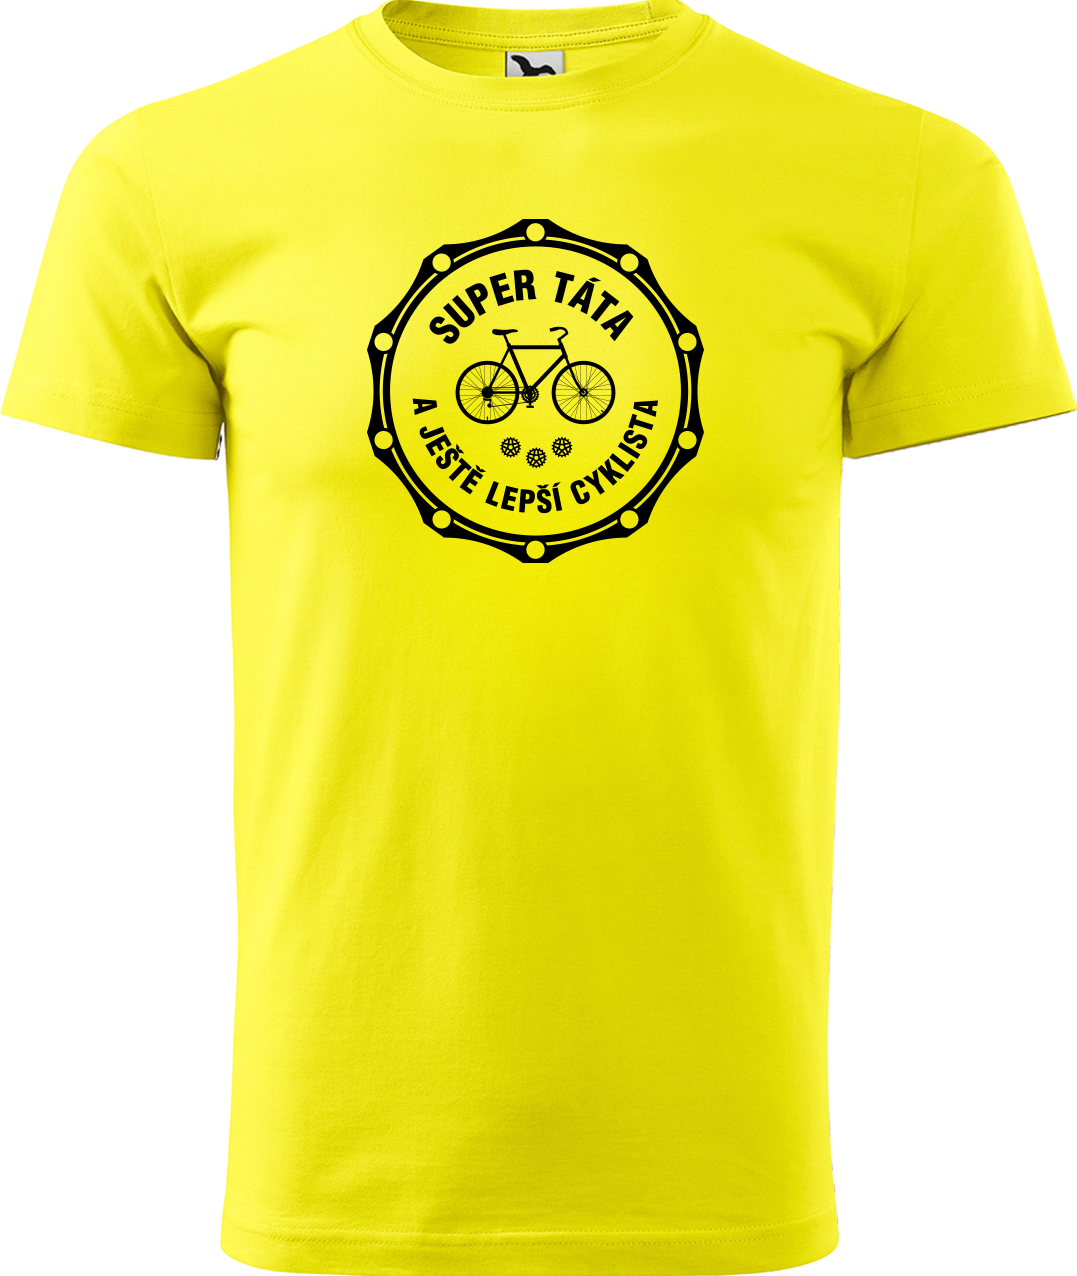 Pánské tričko pro cyklistu - Super táta a ještě lepší cyklista Velikost: L, Barva: Žlutá (04)